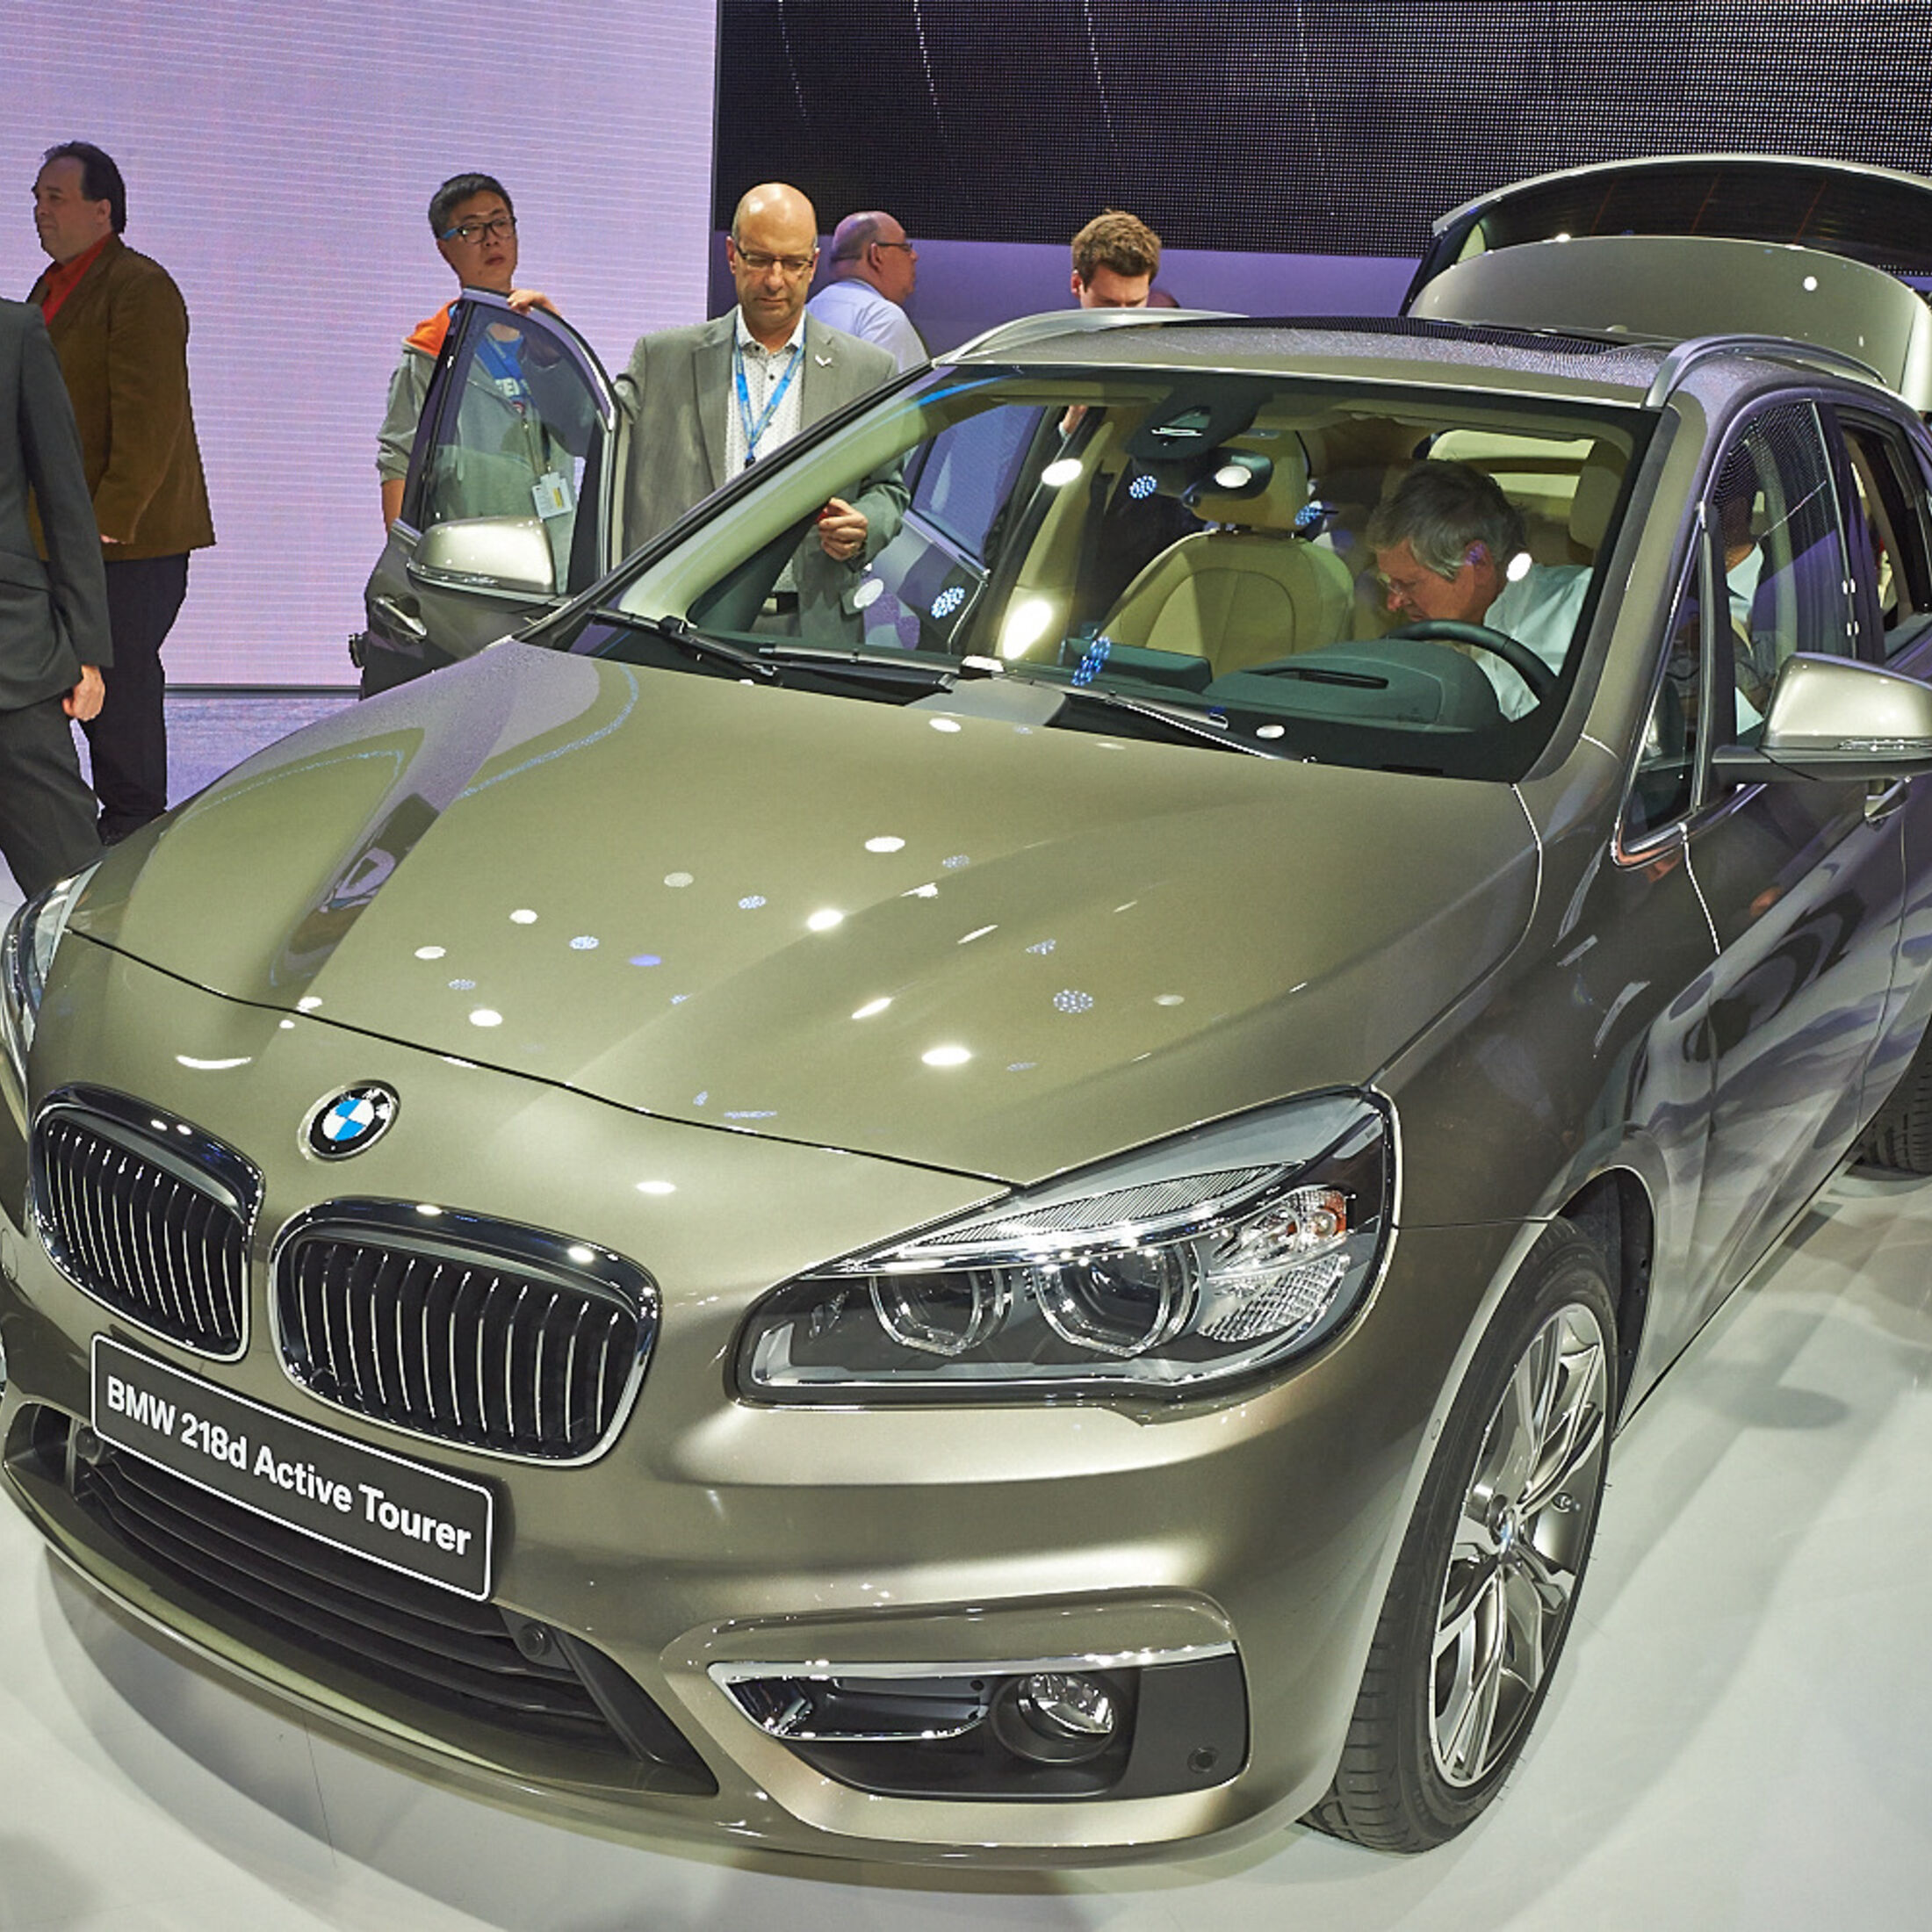 BMW 2er Tourer ▻ Alle Generationen, neue Modelle, Tests